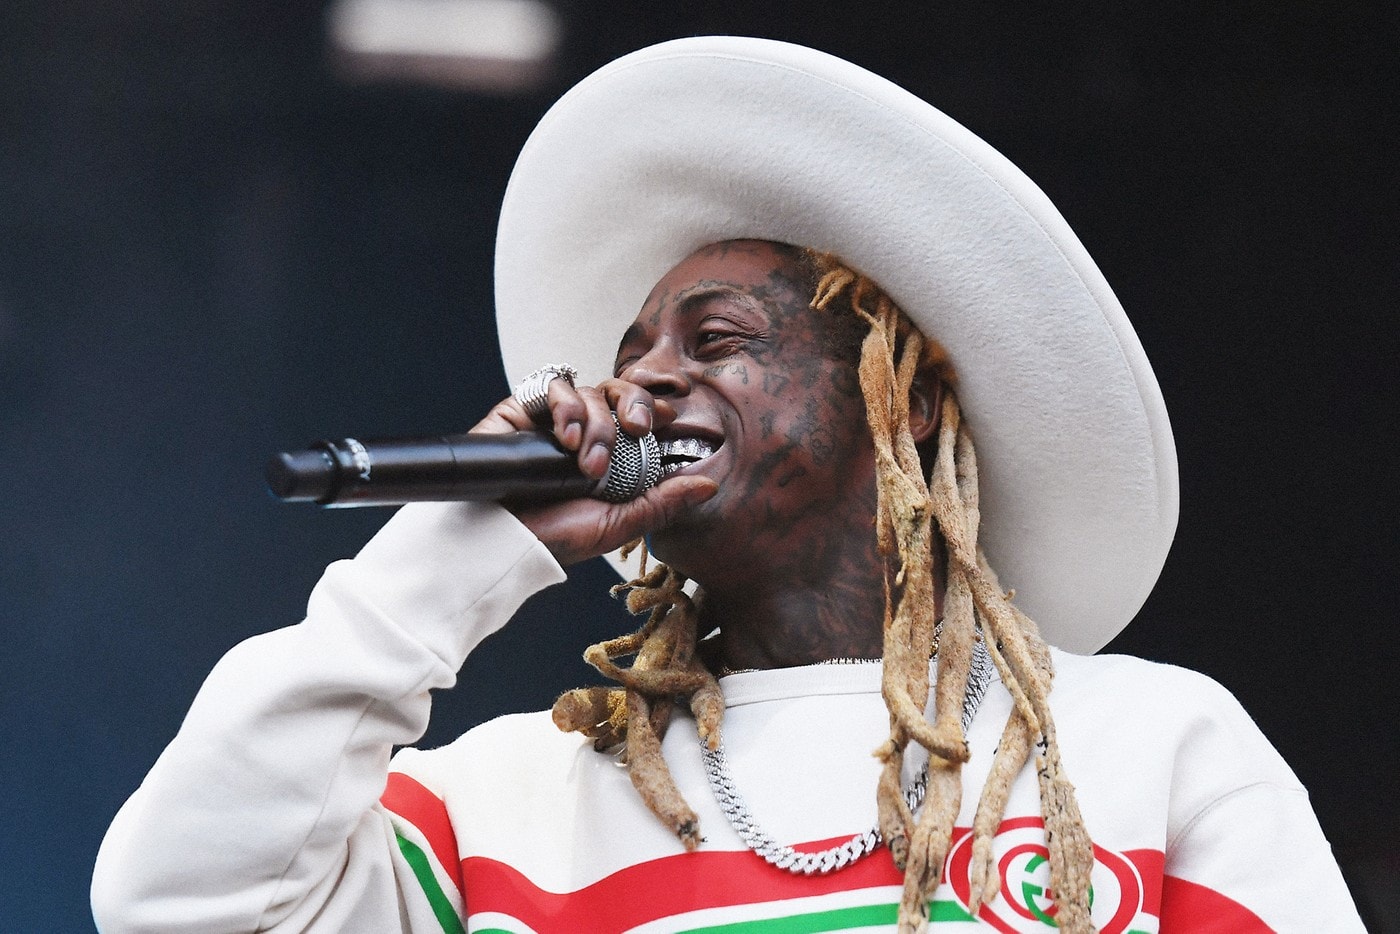 饒舌歌手 Lil Wayne 宣告全新專輯《Funeral》即將正式發行